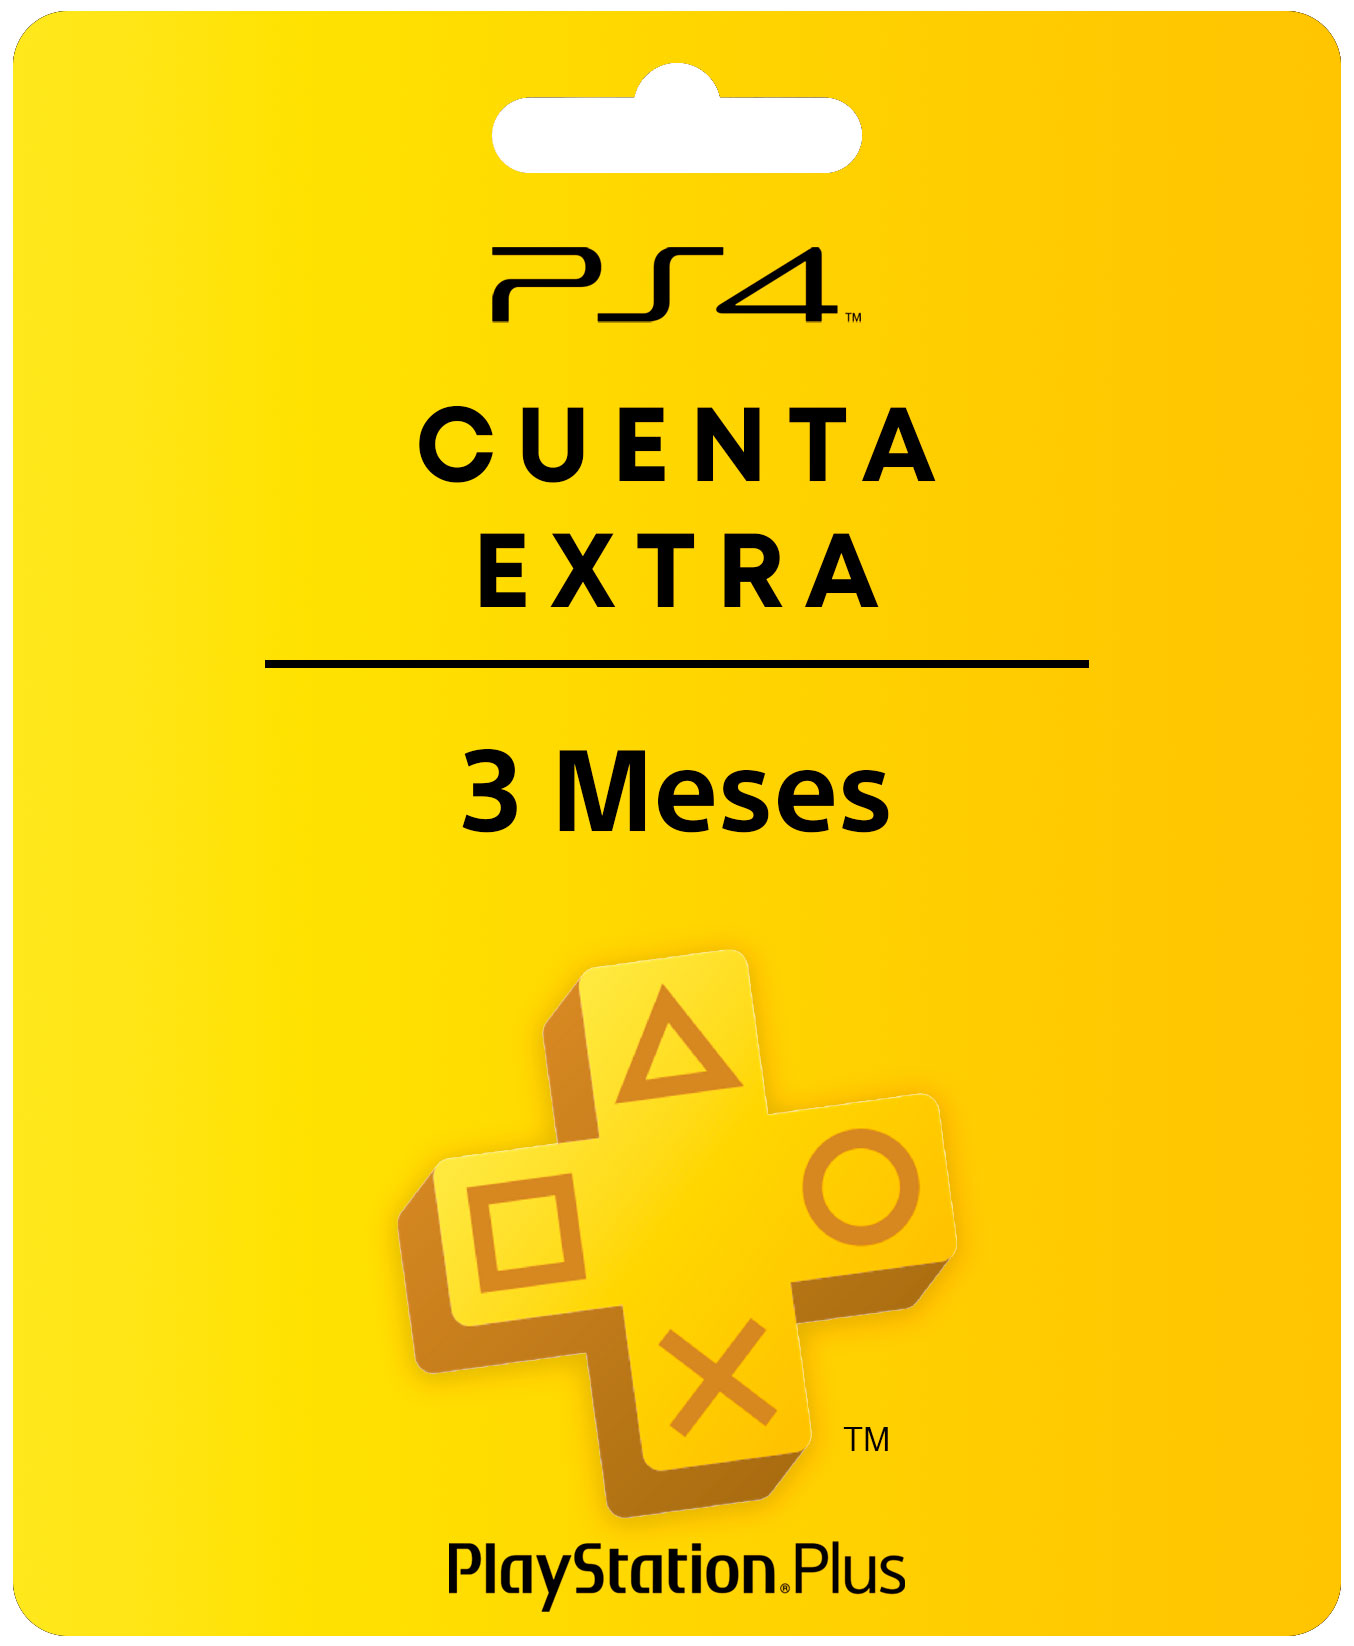 PSN PLUS EXTRA 3 MESES CUENTA PRINCIPAL PS4, Juegos Digitales Colombia